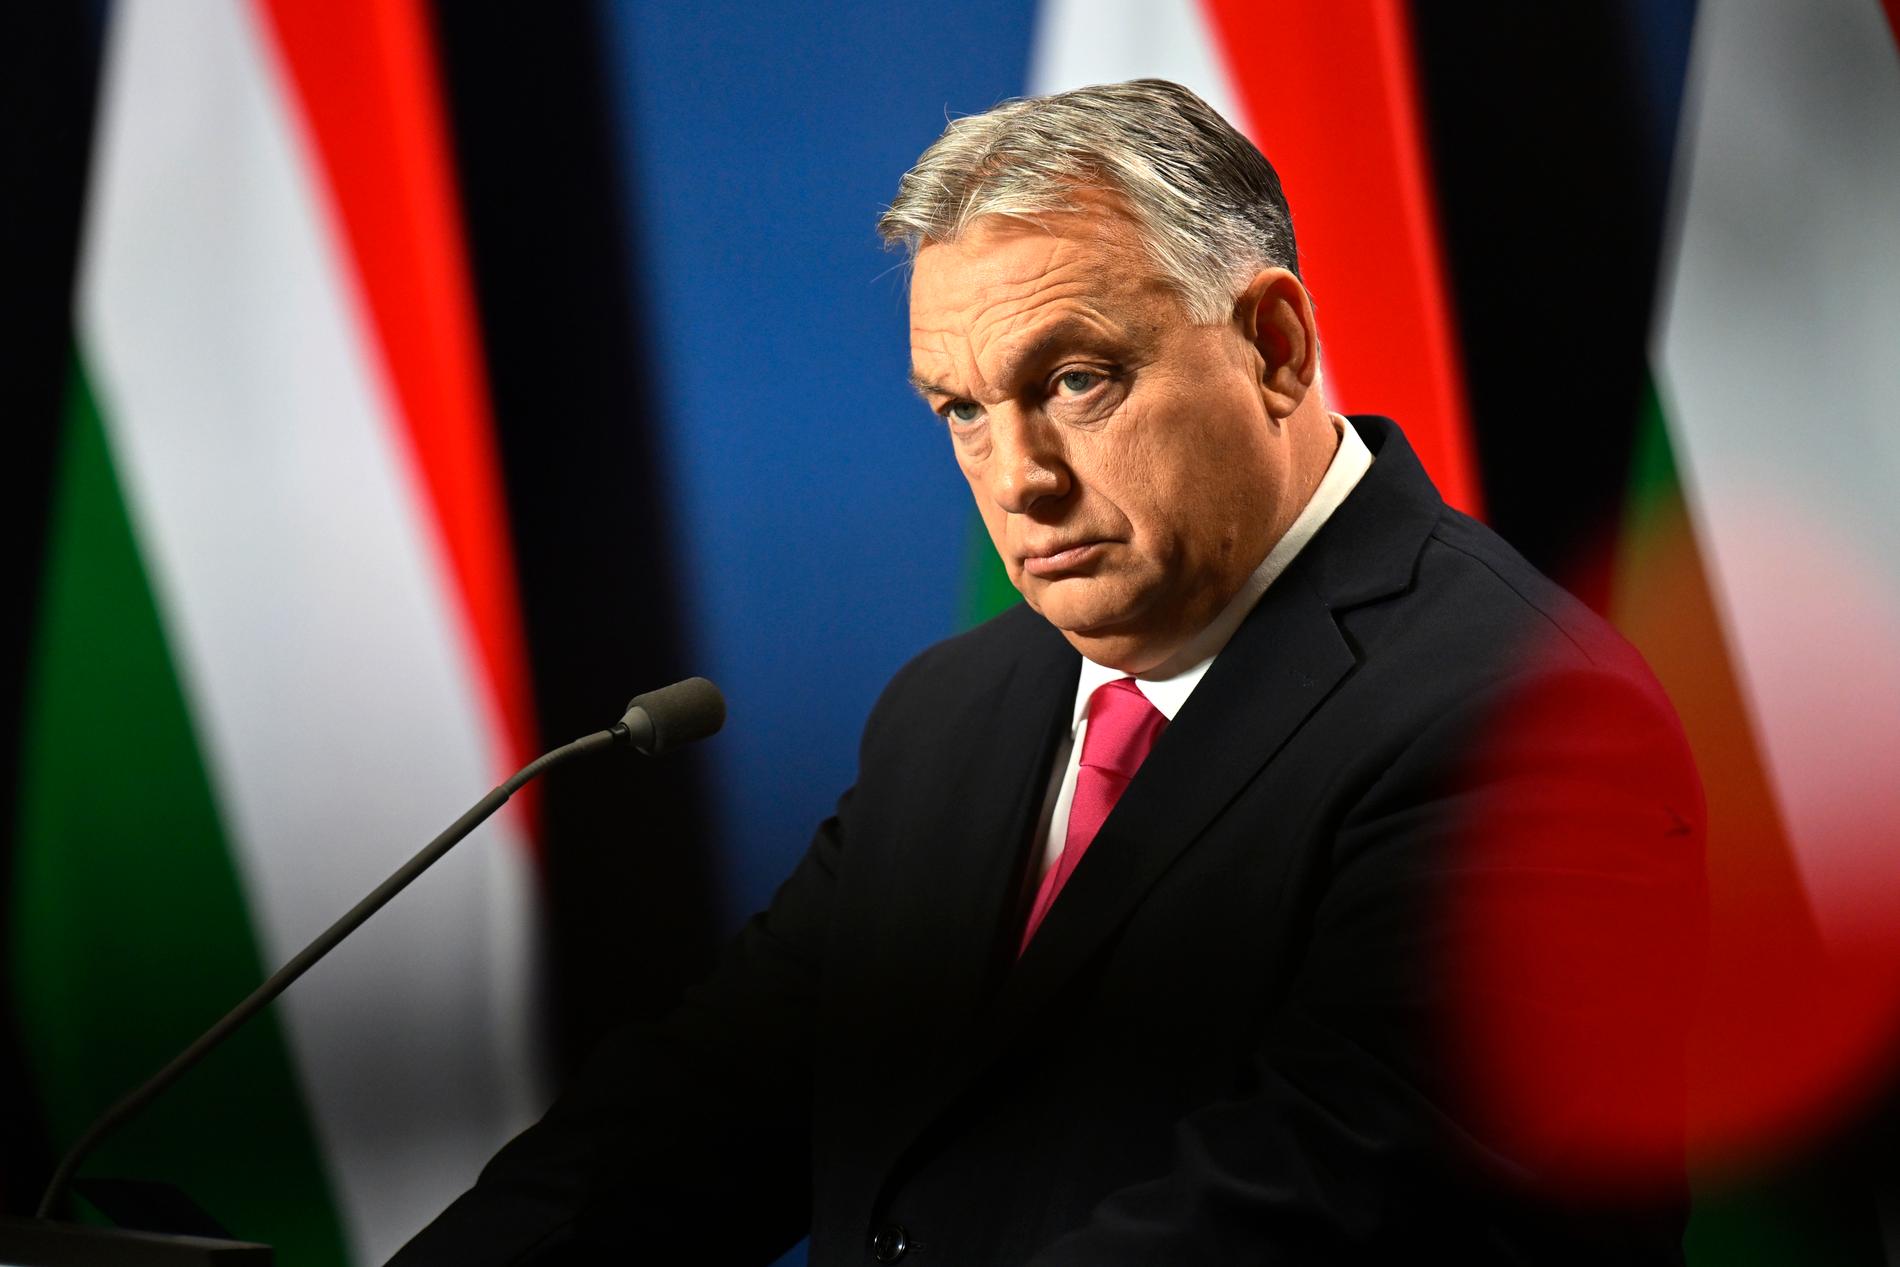  Viktor Orbán.